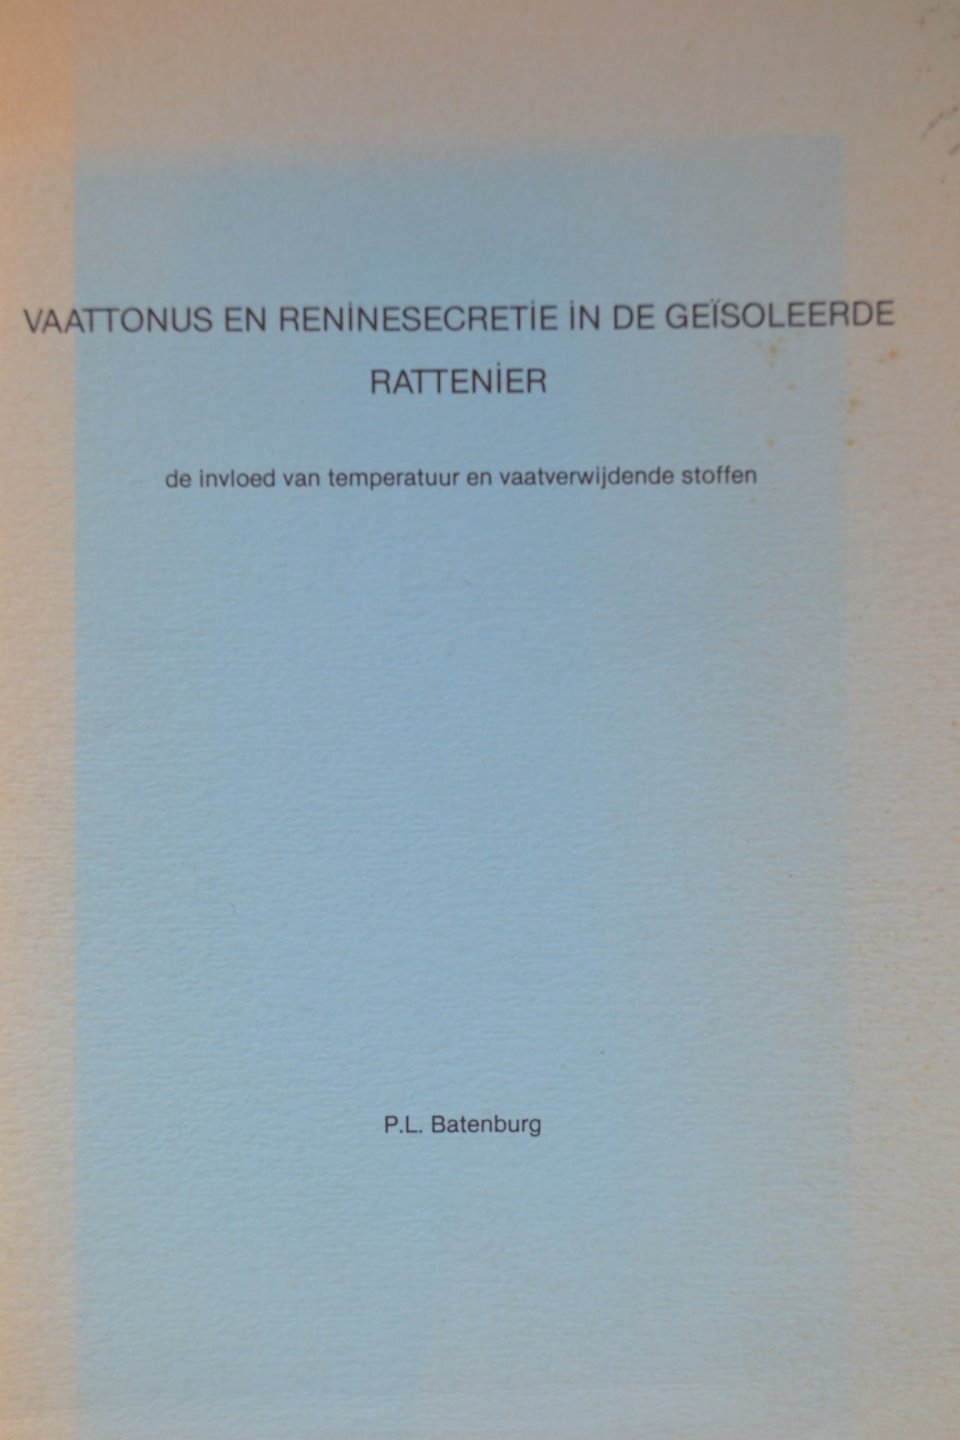 P.L. Batenburg - Vaattonus en reninesecretie in de geïsoleerde rattenier. De ivloed van vaatverwijdende stoffen